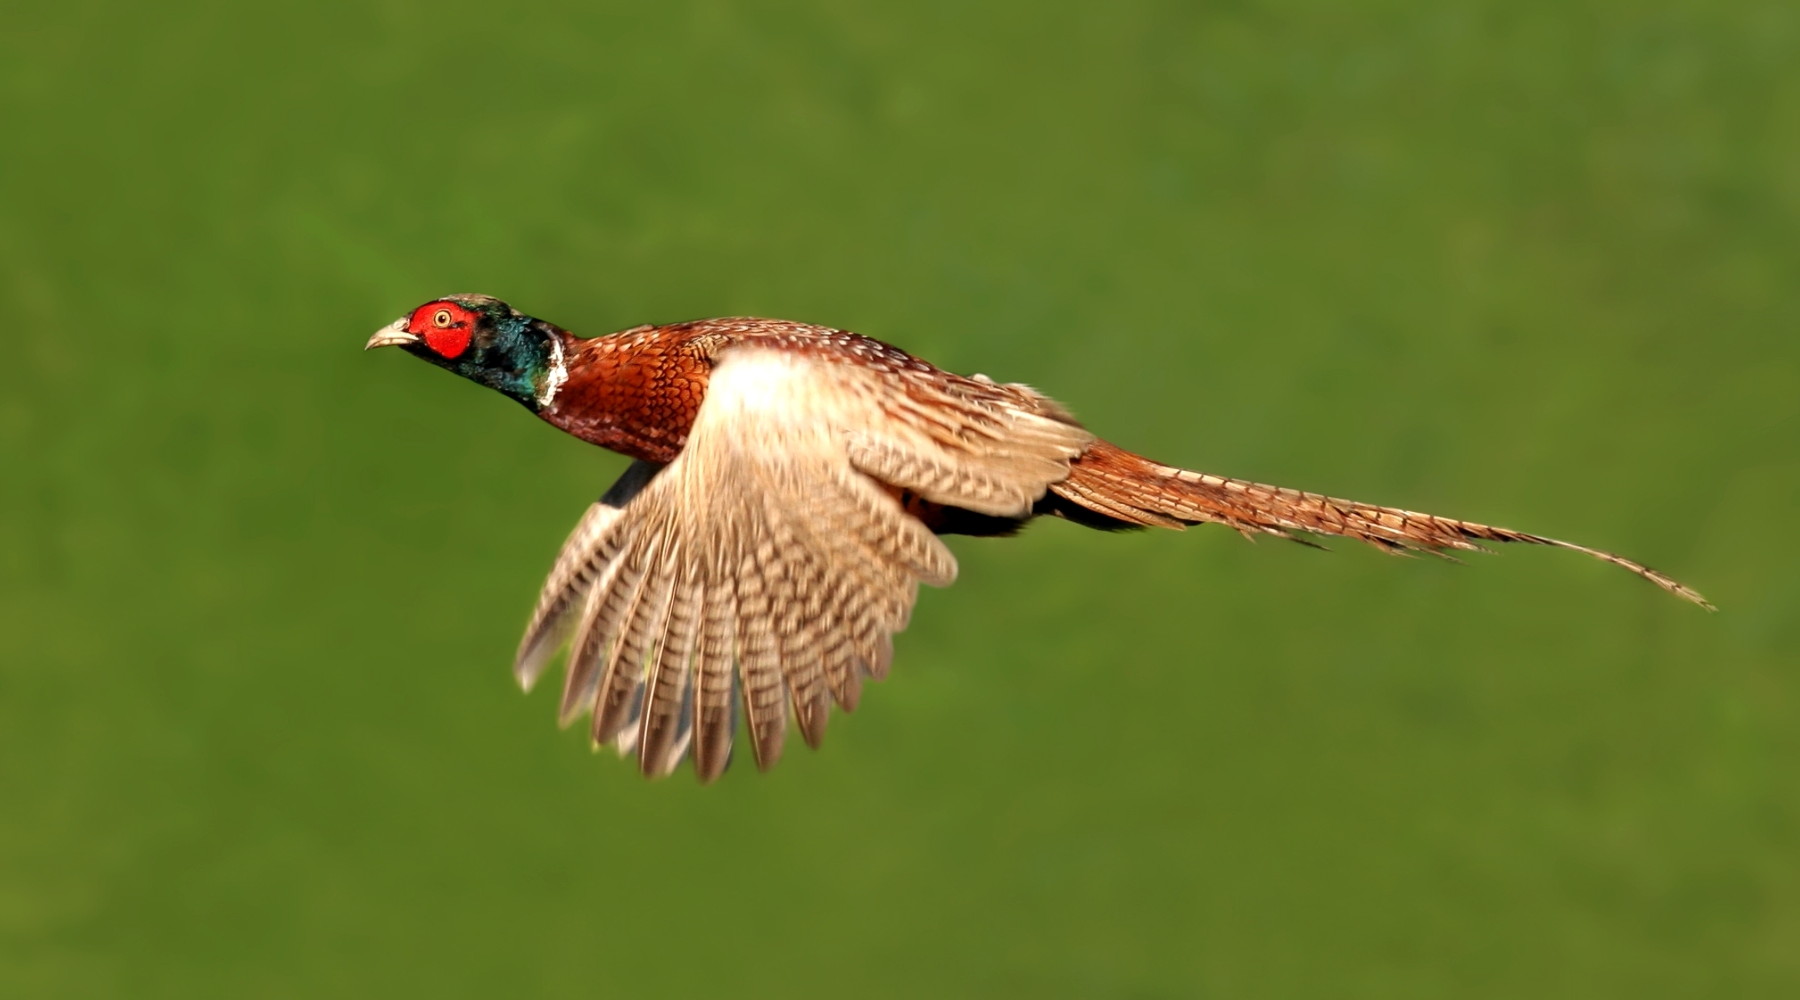 Gestione della fauna e politica agricola: fagiano in volo su sfondo verde